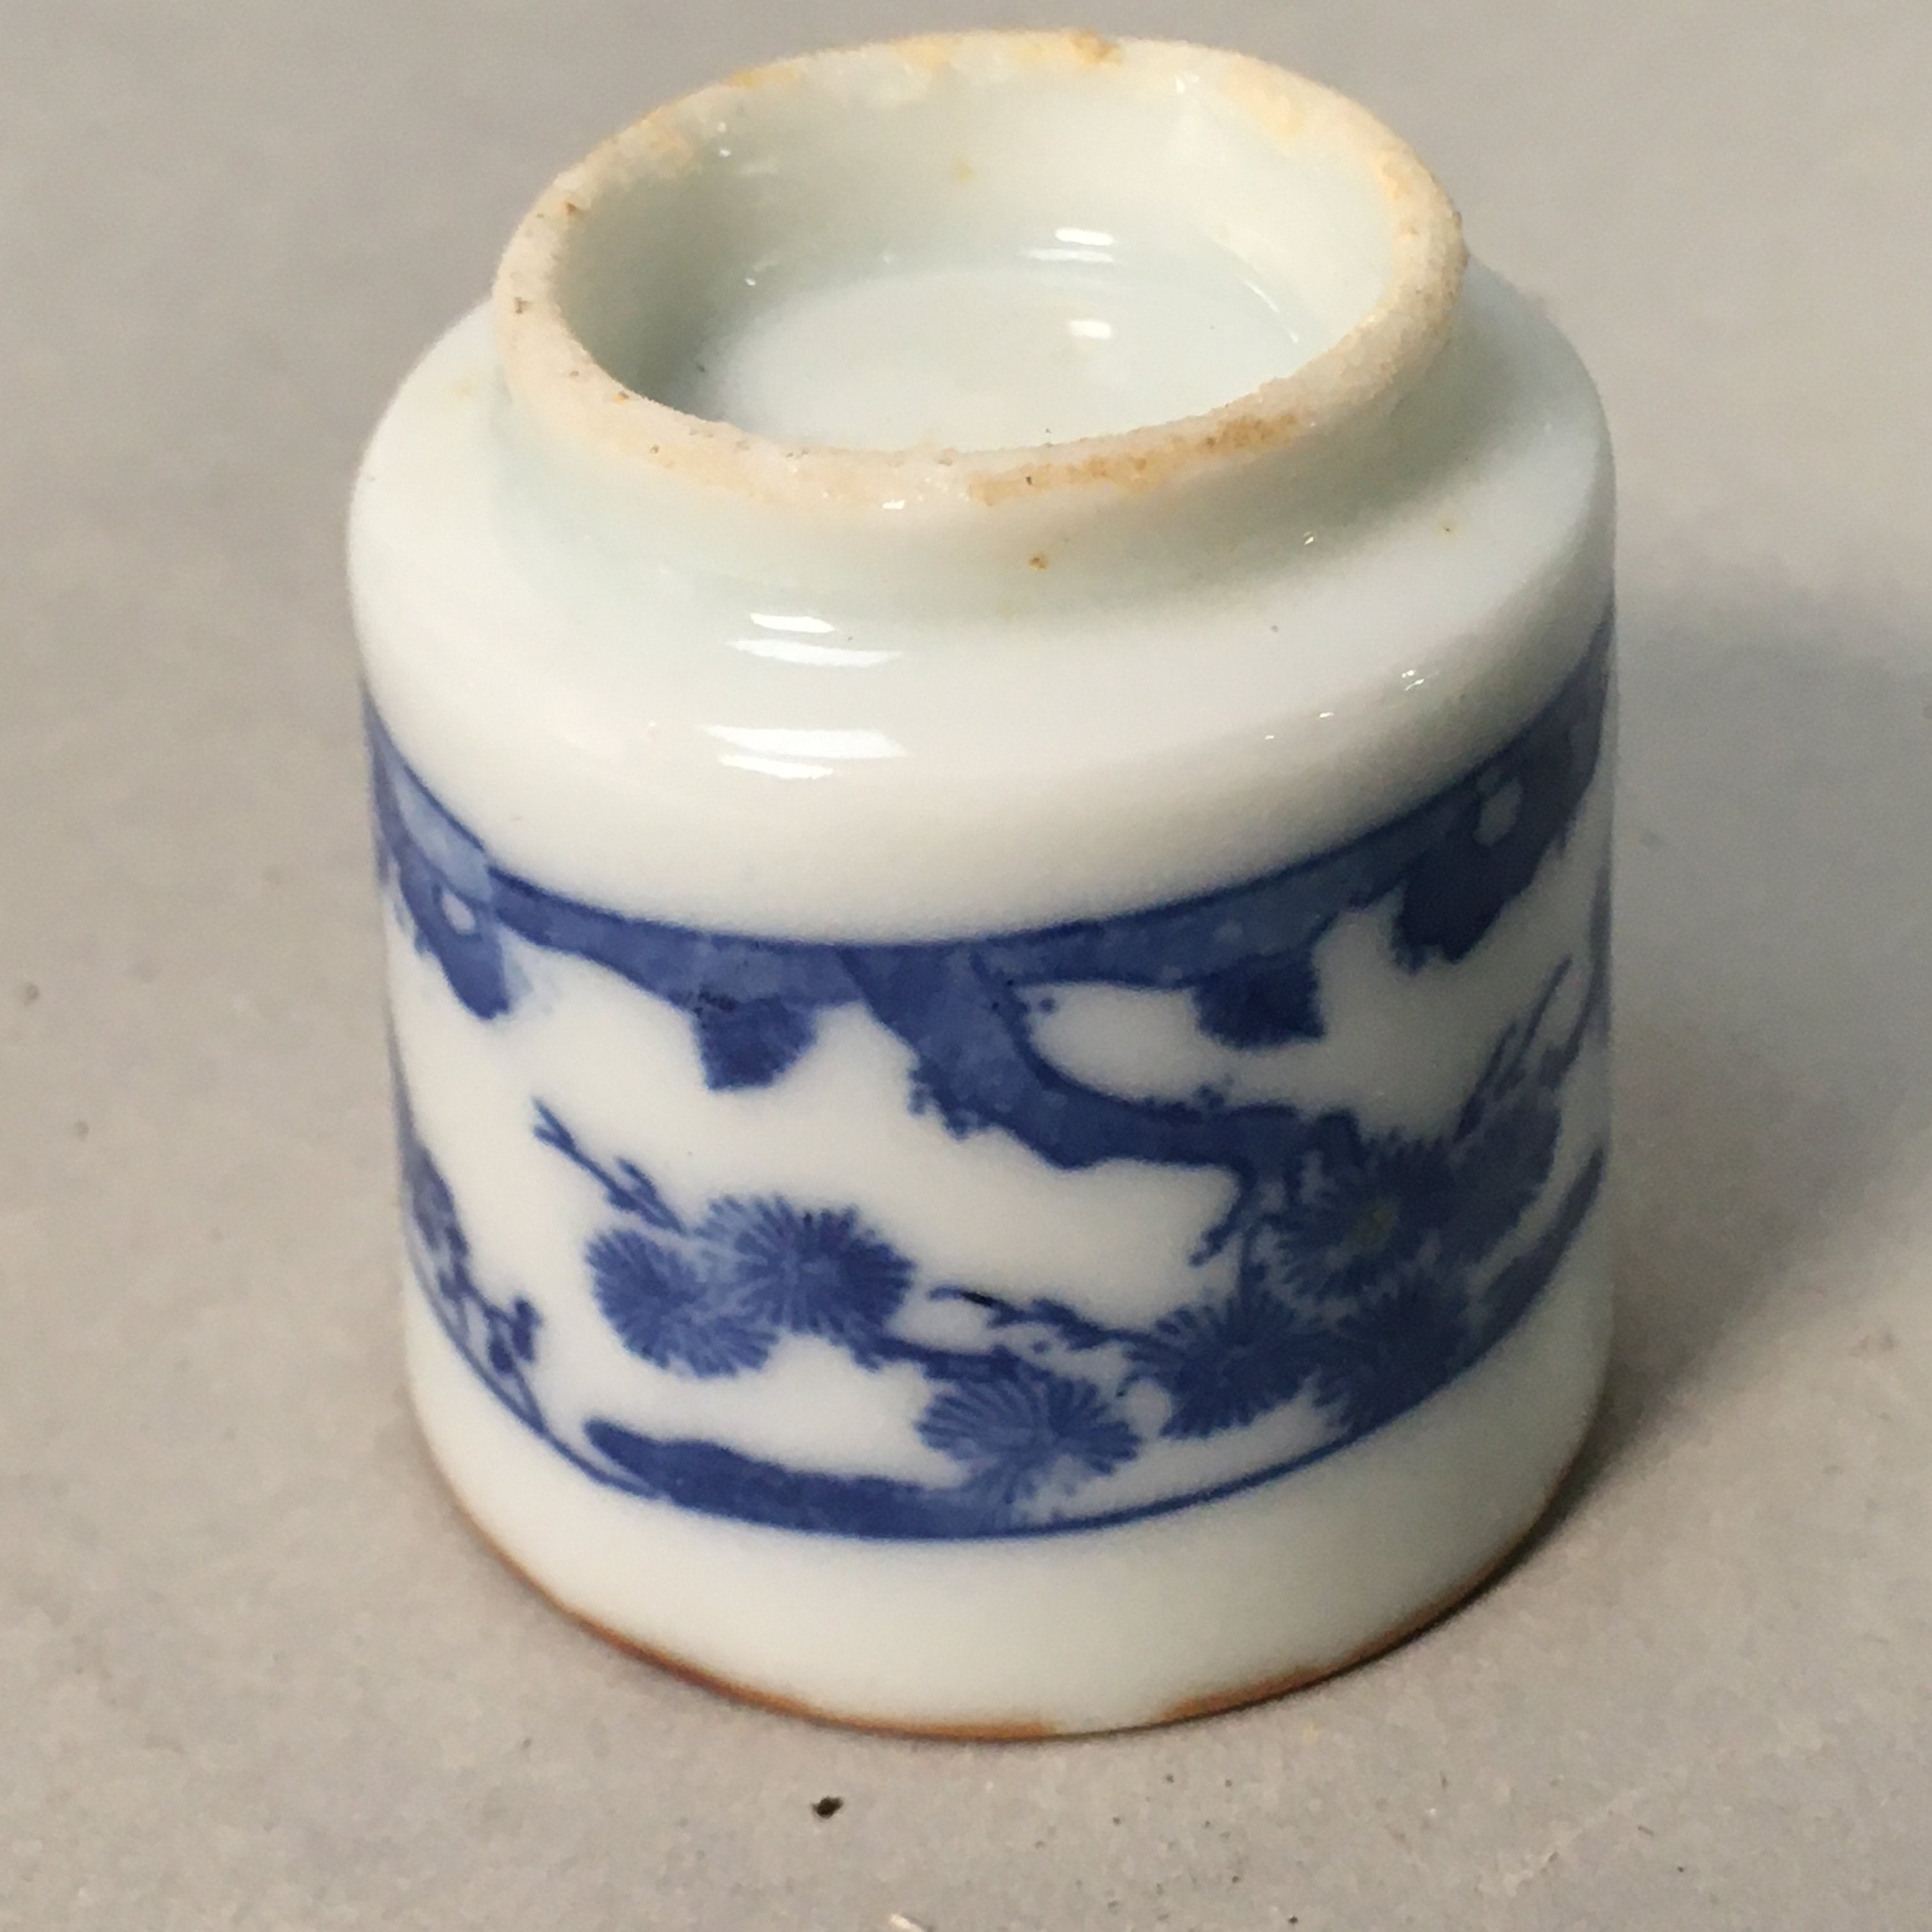 Japanese Porcelain Sake Cup Guinomi Sakazuki Vtg Blue White Lucky Plants GU765